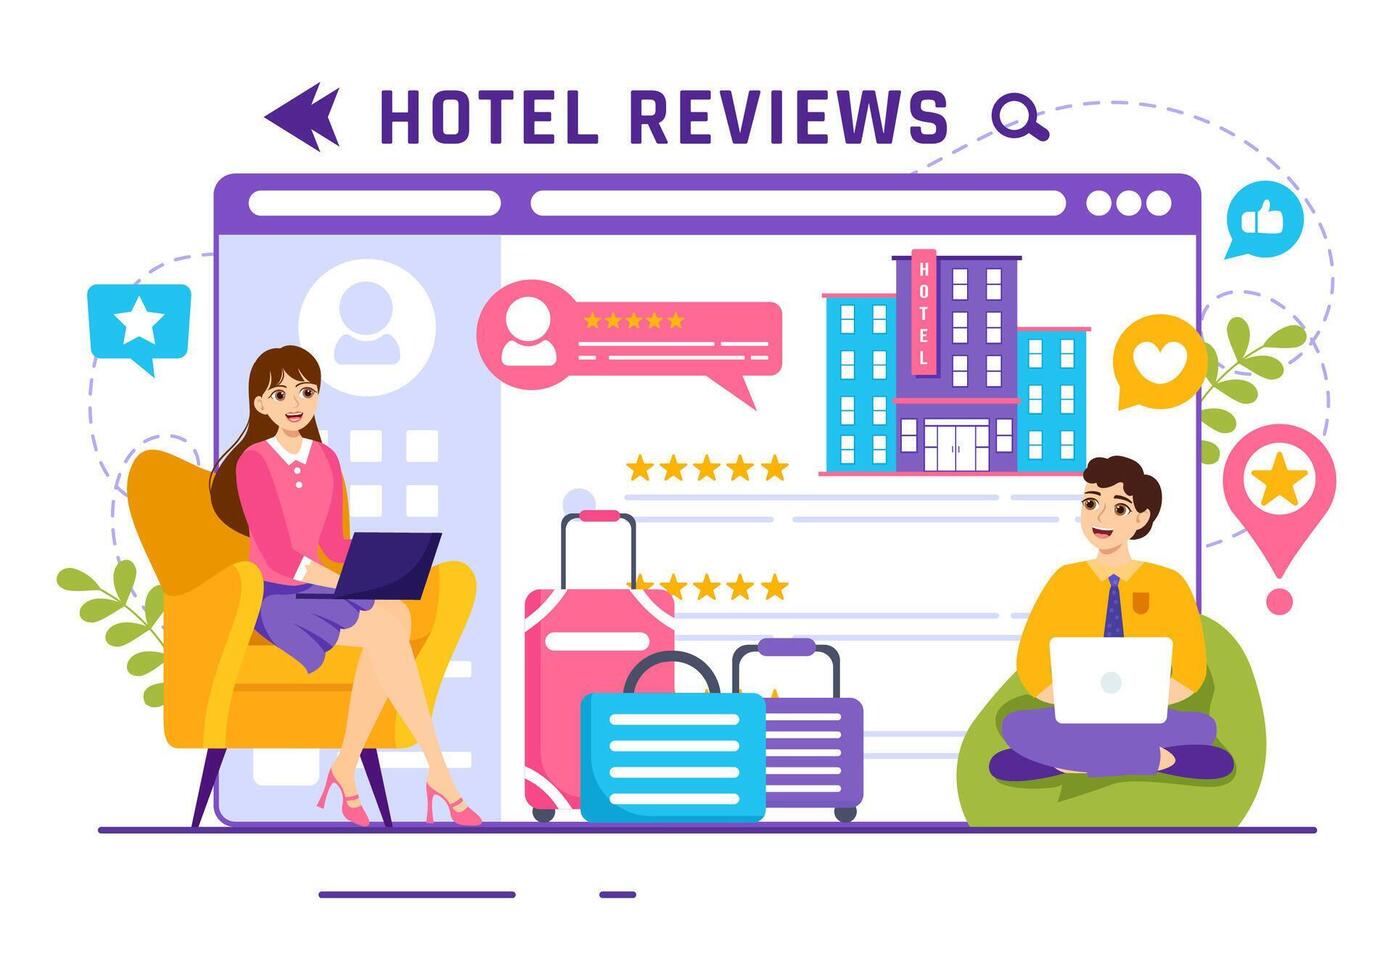 hotell recensioner vektor illustration med betyg service, användare tillfredsställelse till rated kund, produkt eller erfarenhet i platt tecknad serie bakgrund